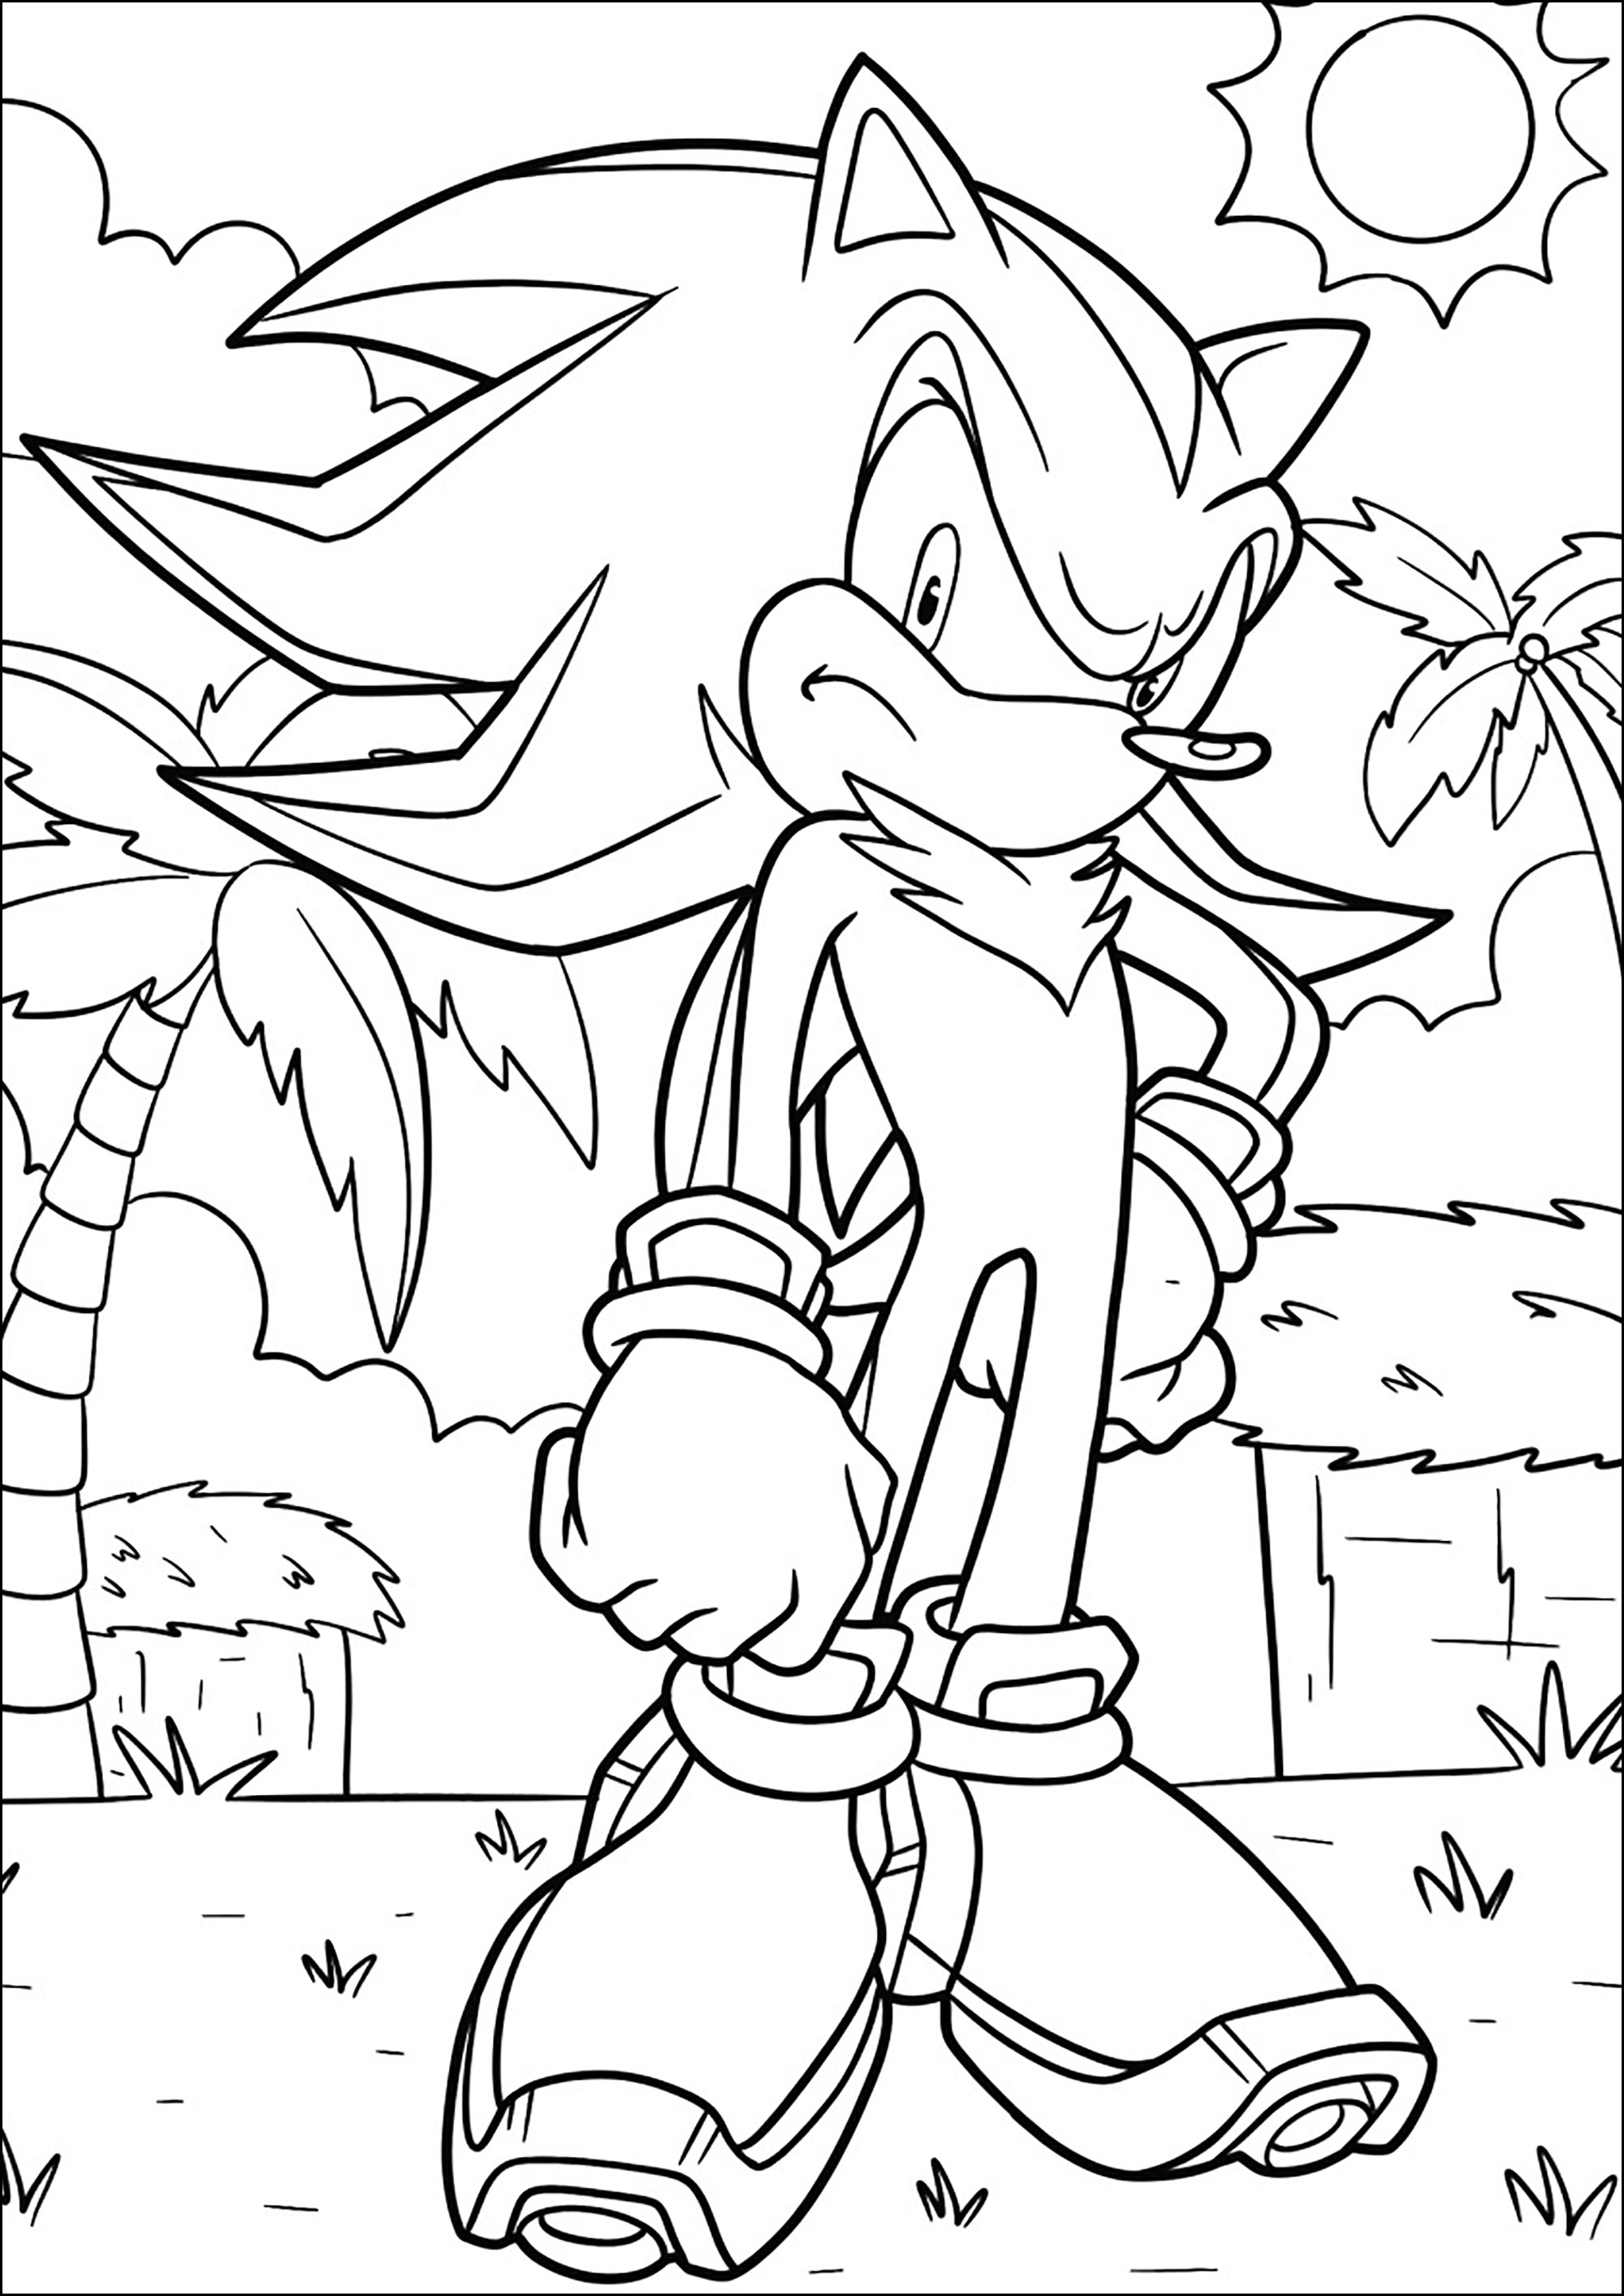 Desenhos para colorir de Sonic the Hedgehog 2 The Movie - Desenhos para  colorir gratuitos para impressão